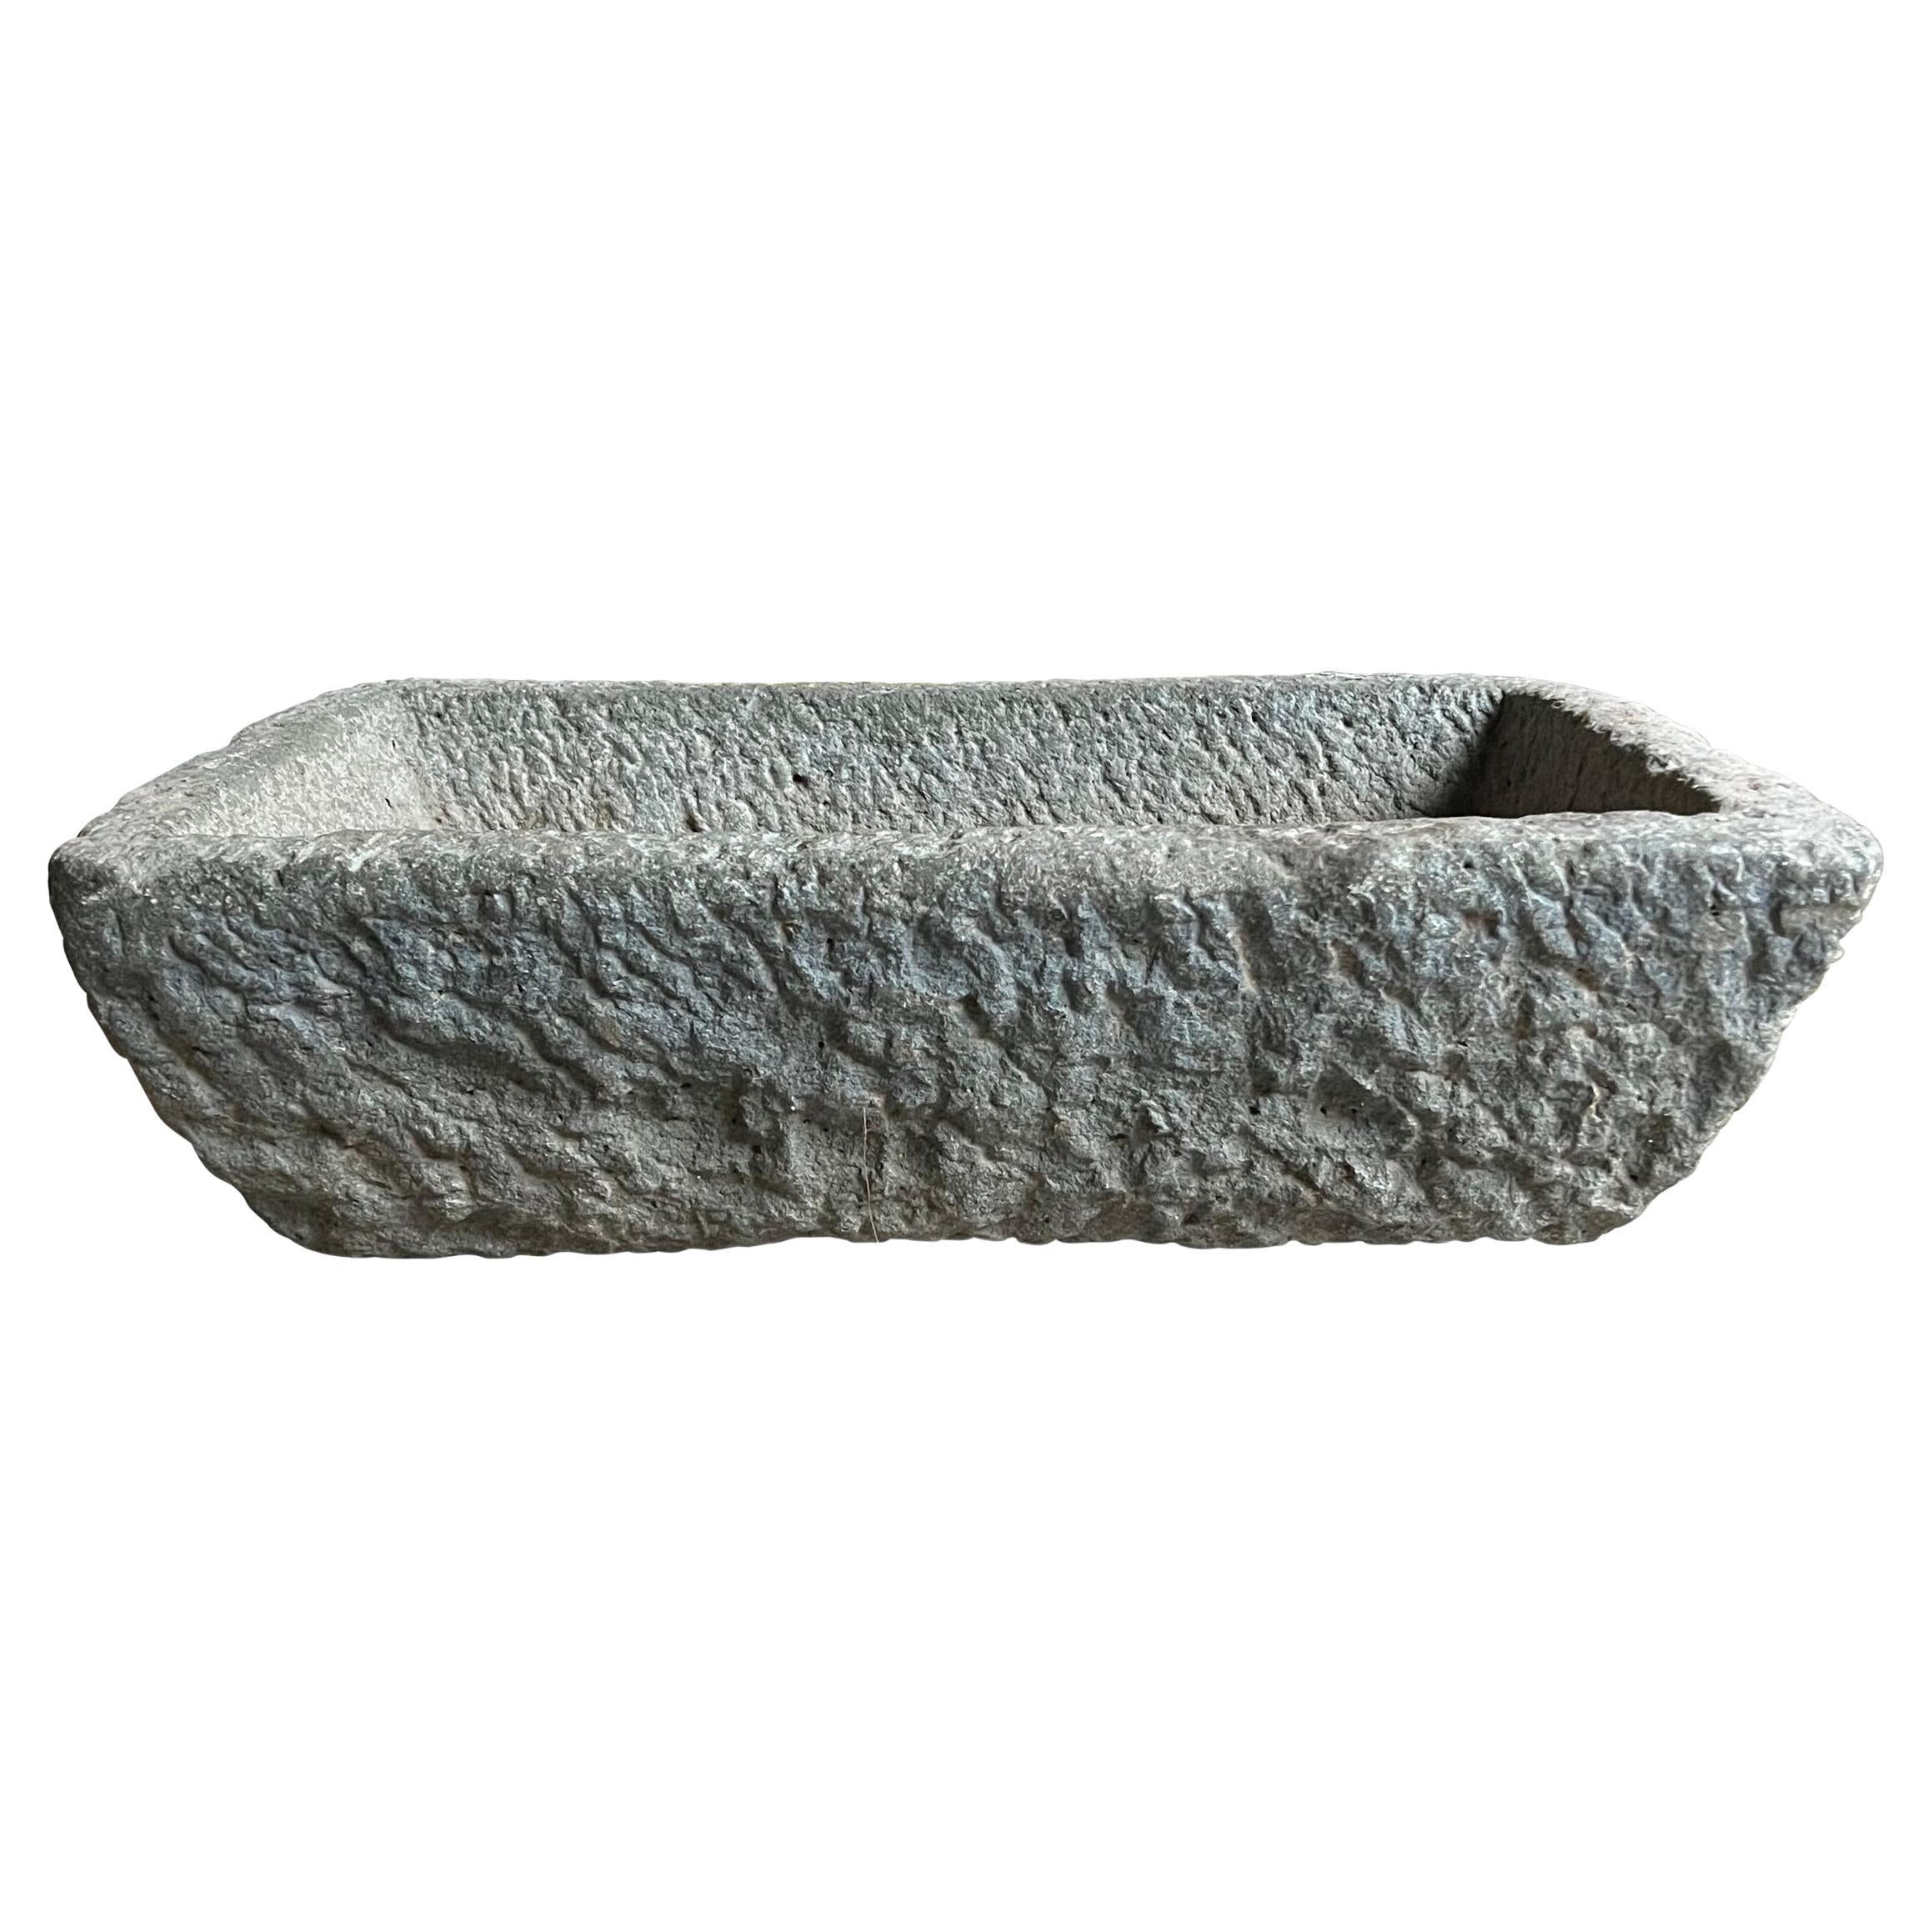 Geschnitztes Granit-Pflanzgefäß